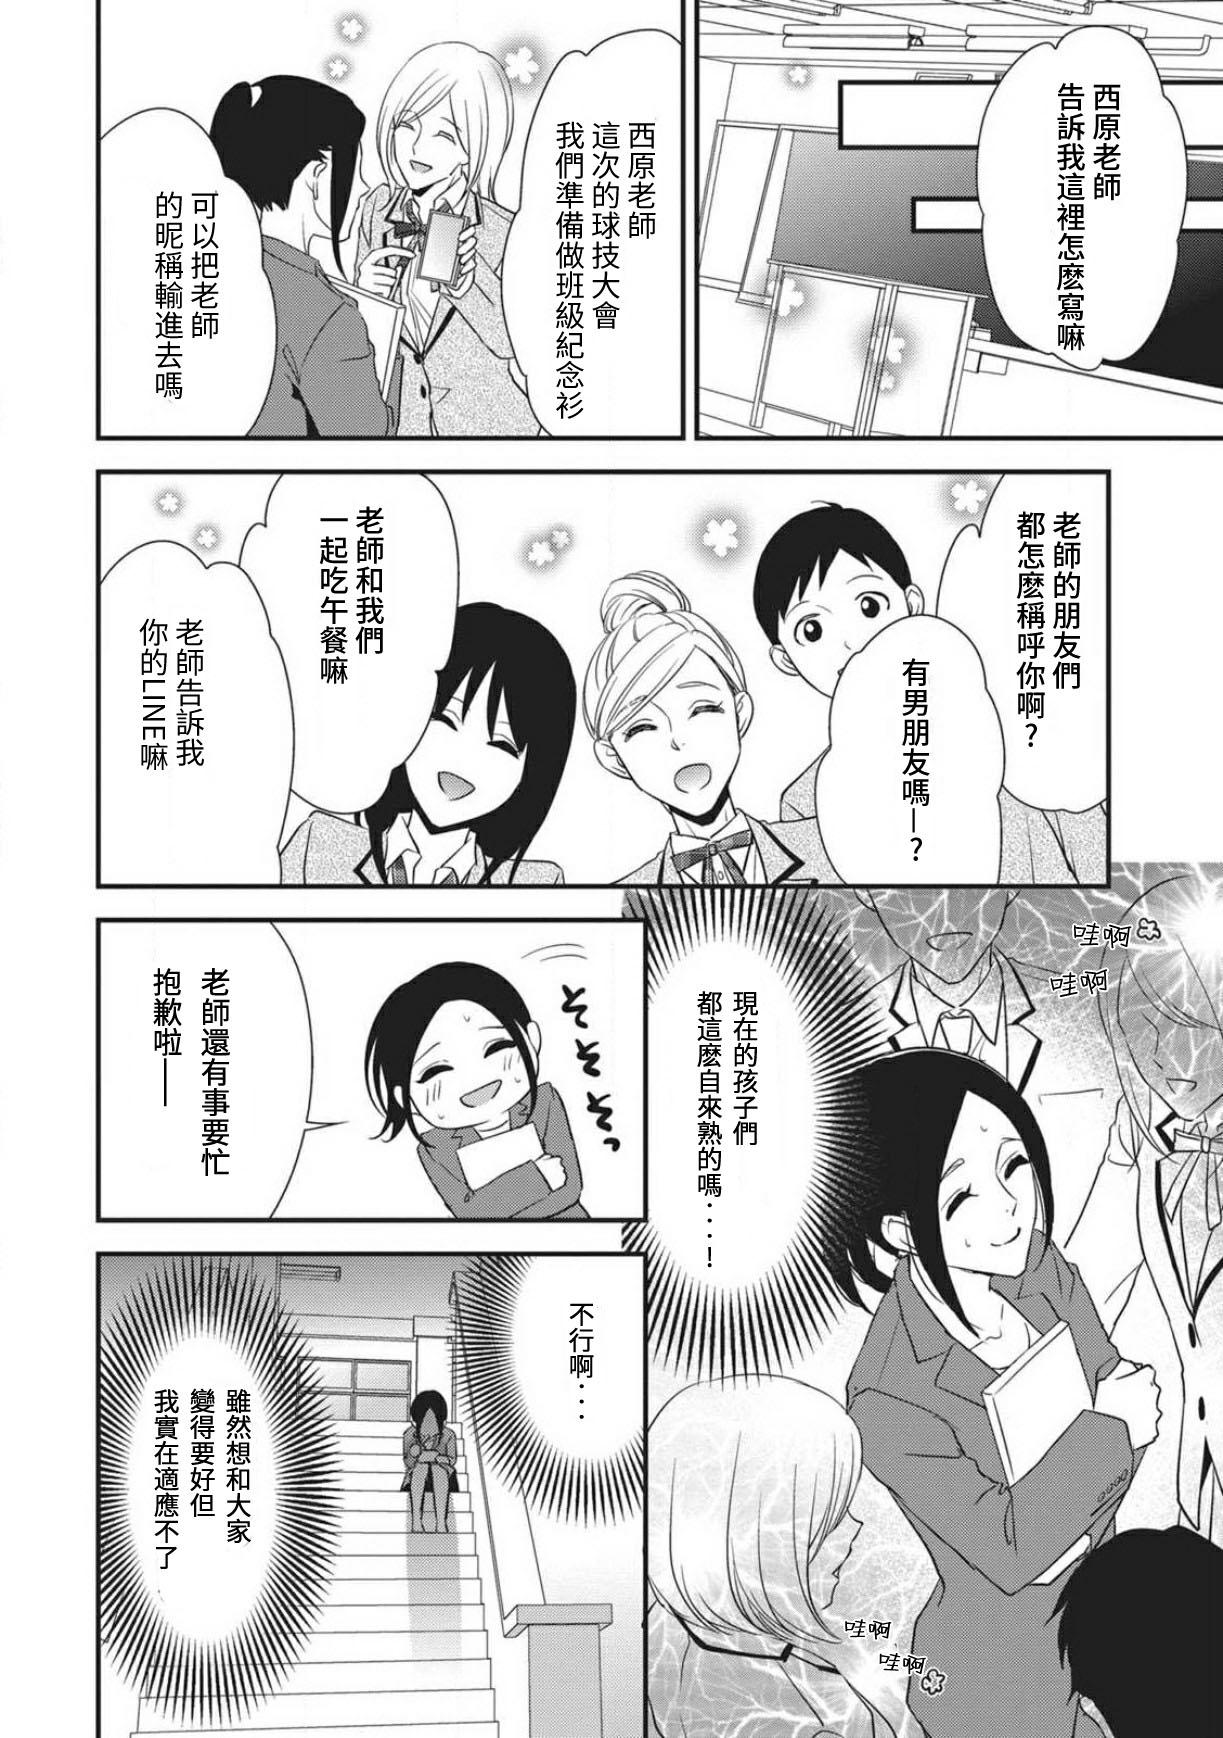 Chaturbate Watashi no hoken no sensei | 我的保健老师 Mediumtits - Page 8